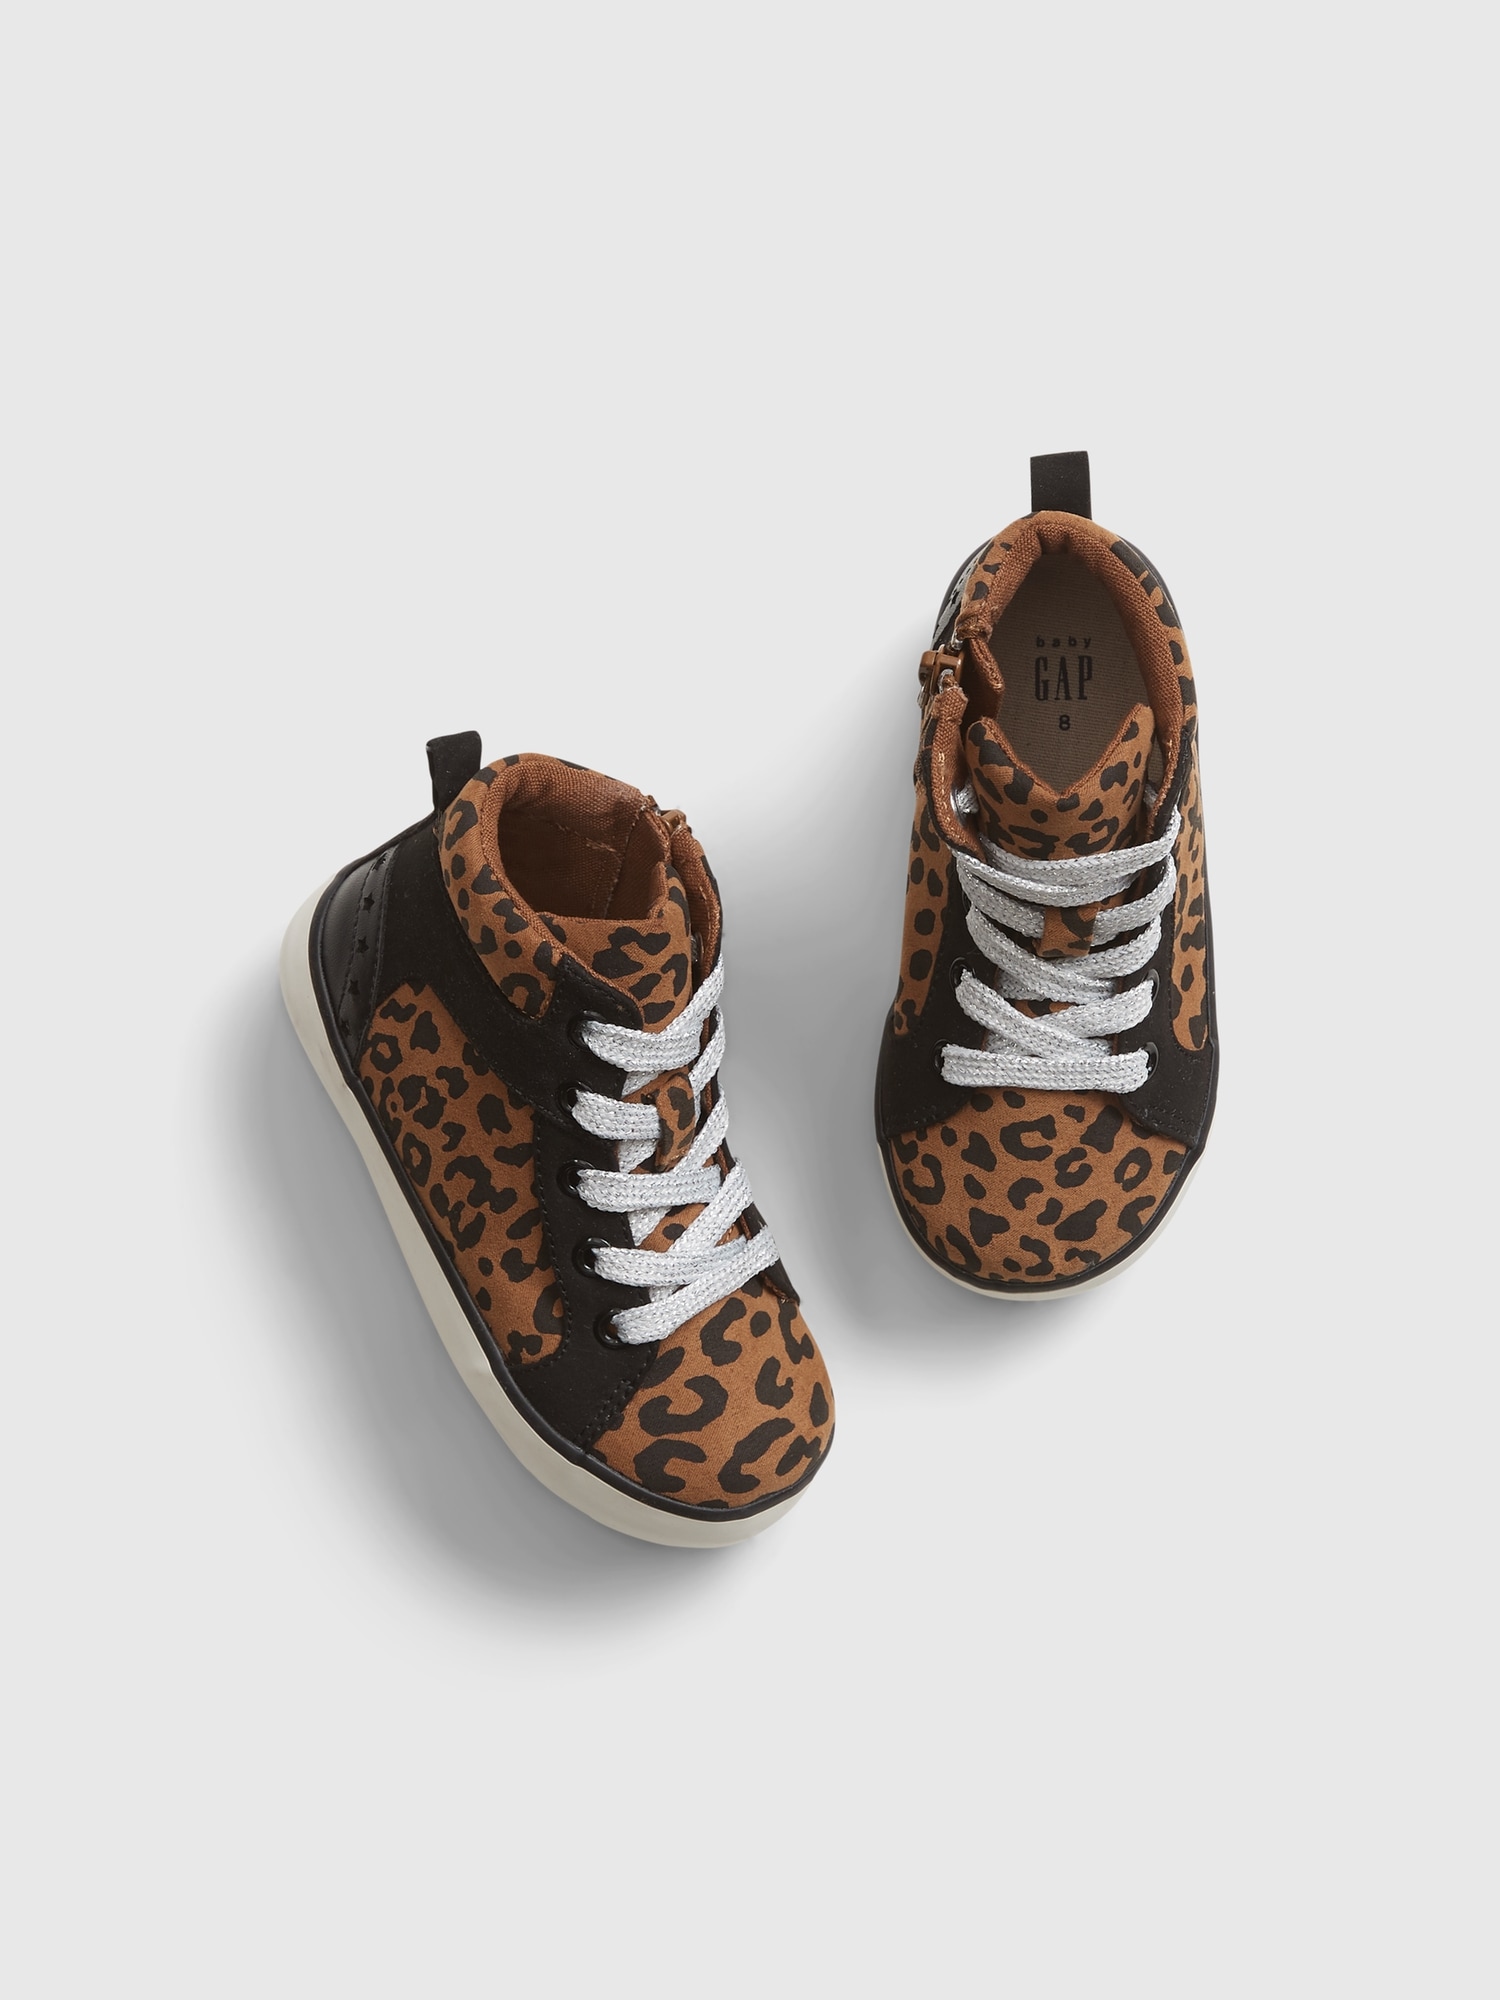 gap leopard print shoes